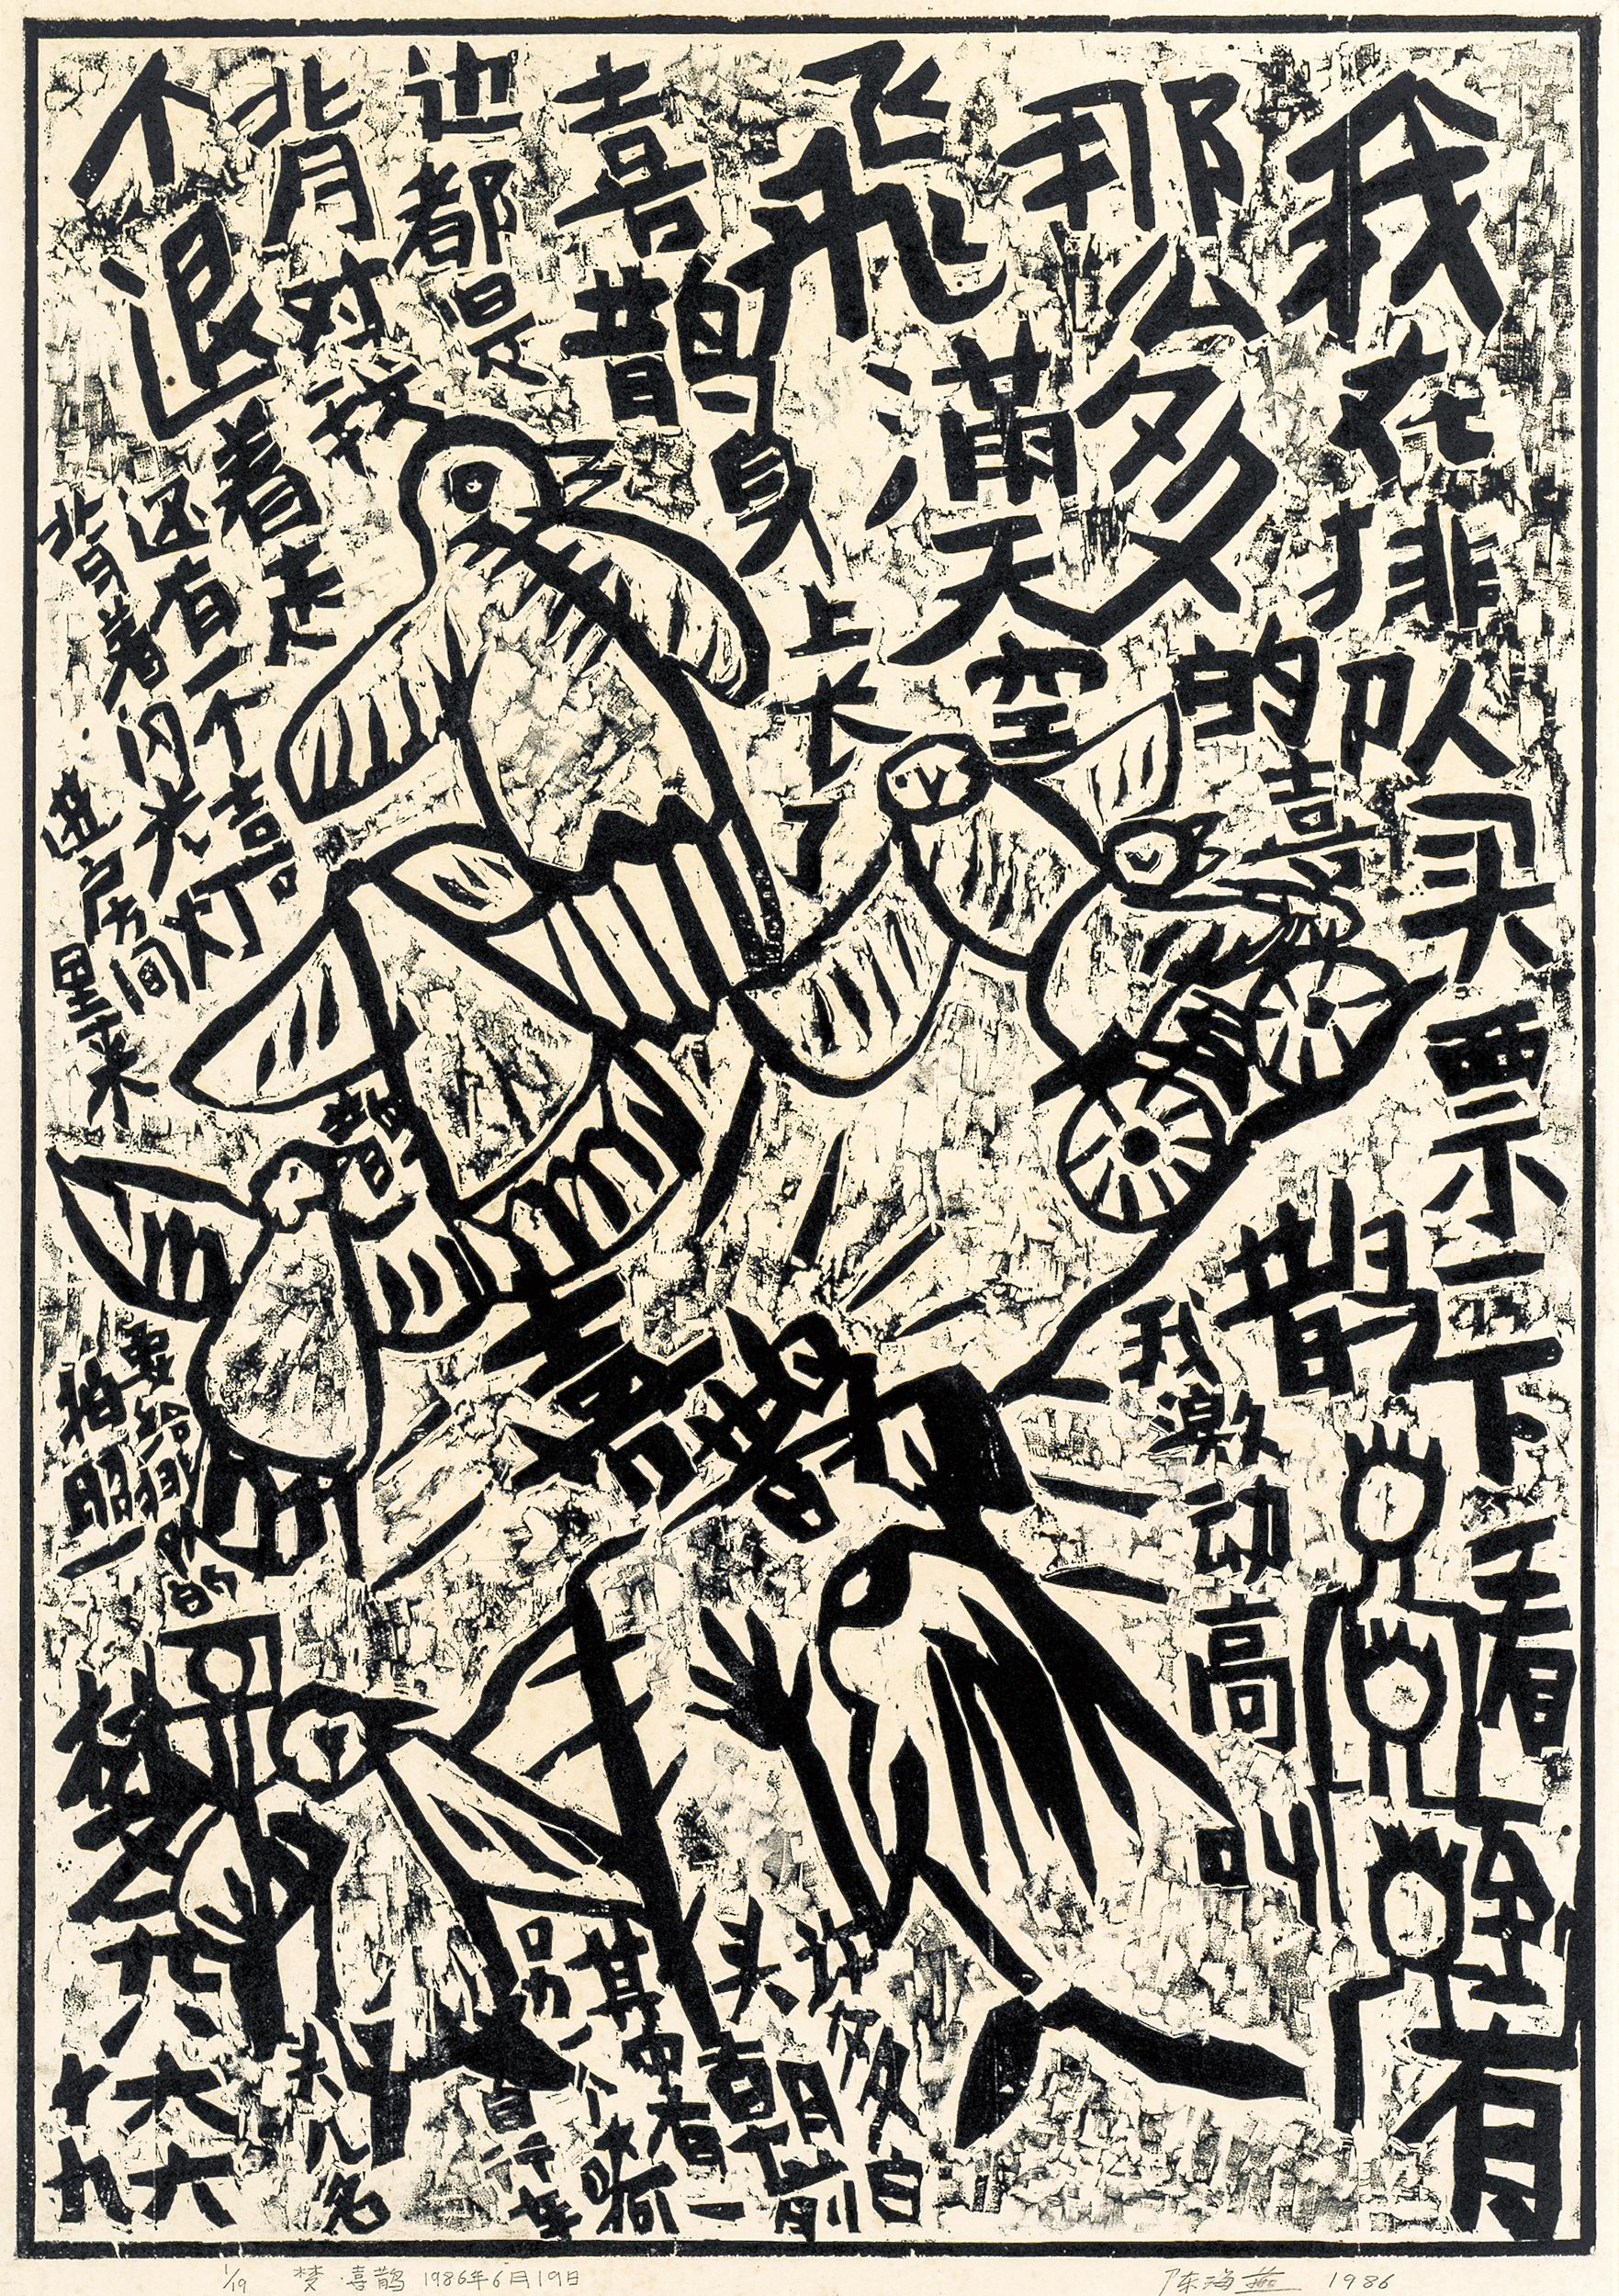 3000年中国书法展》展品赏析- SWI swissinfo.ch